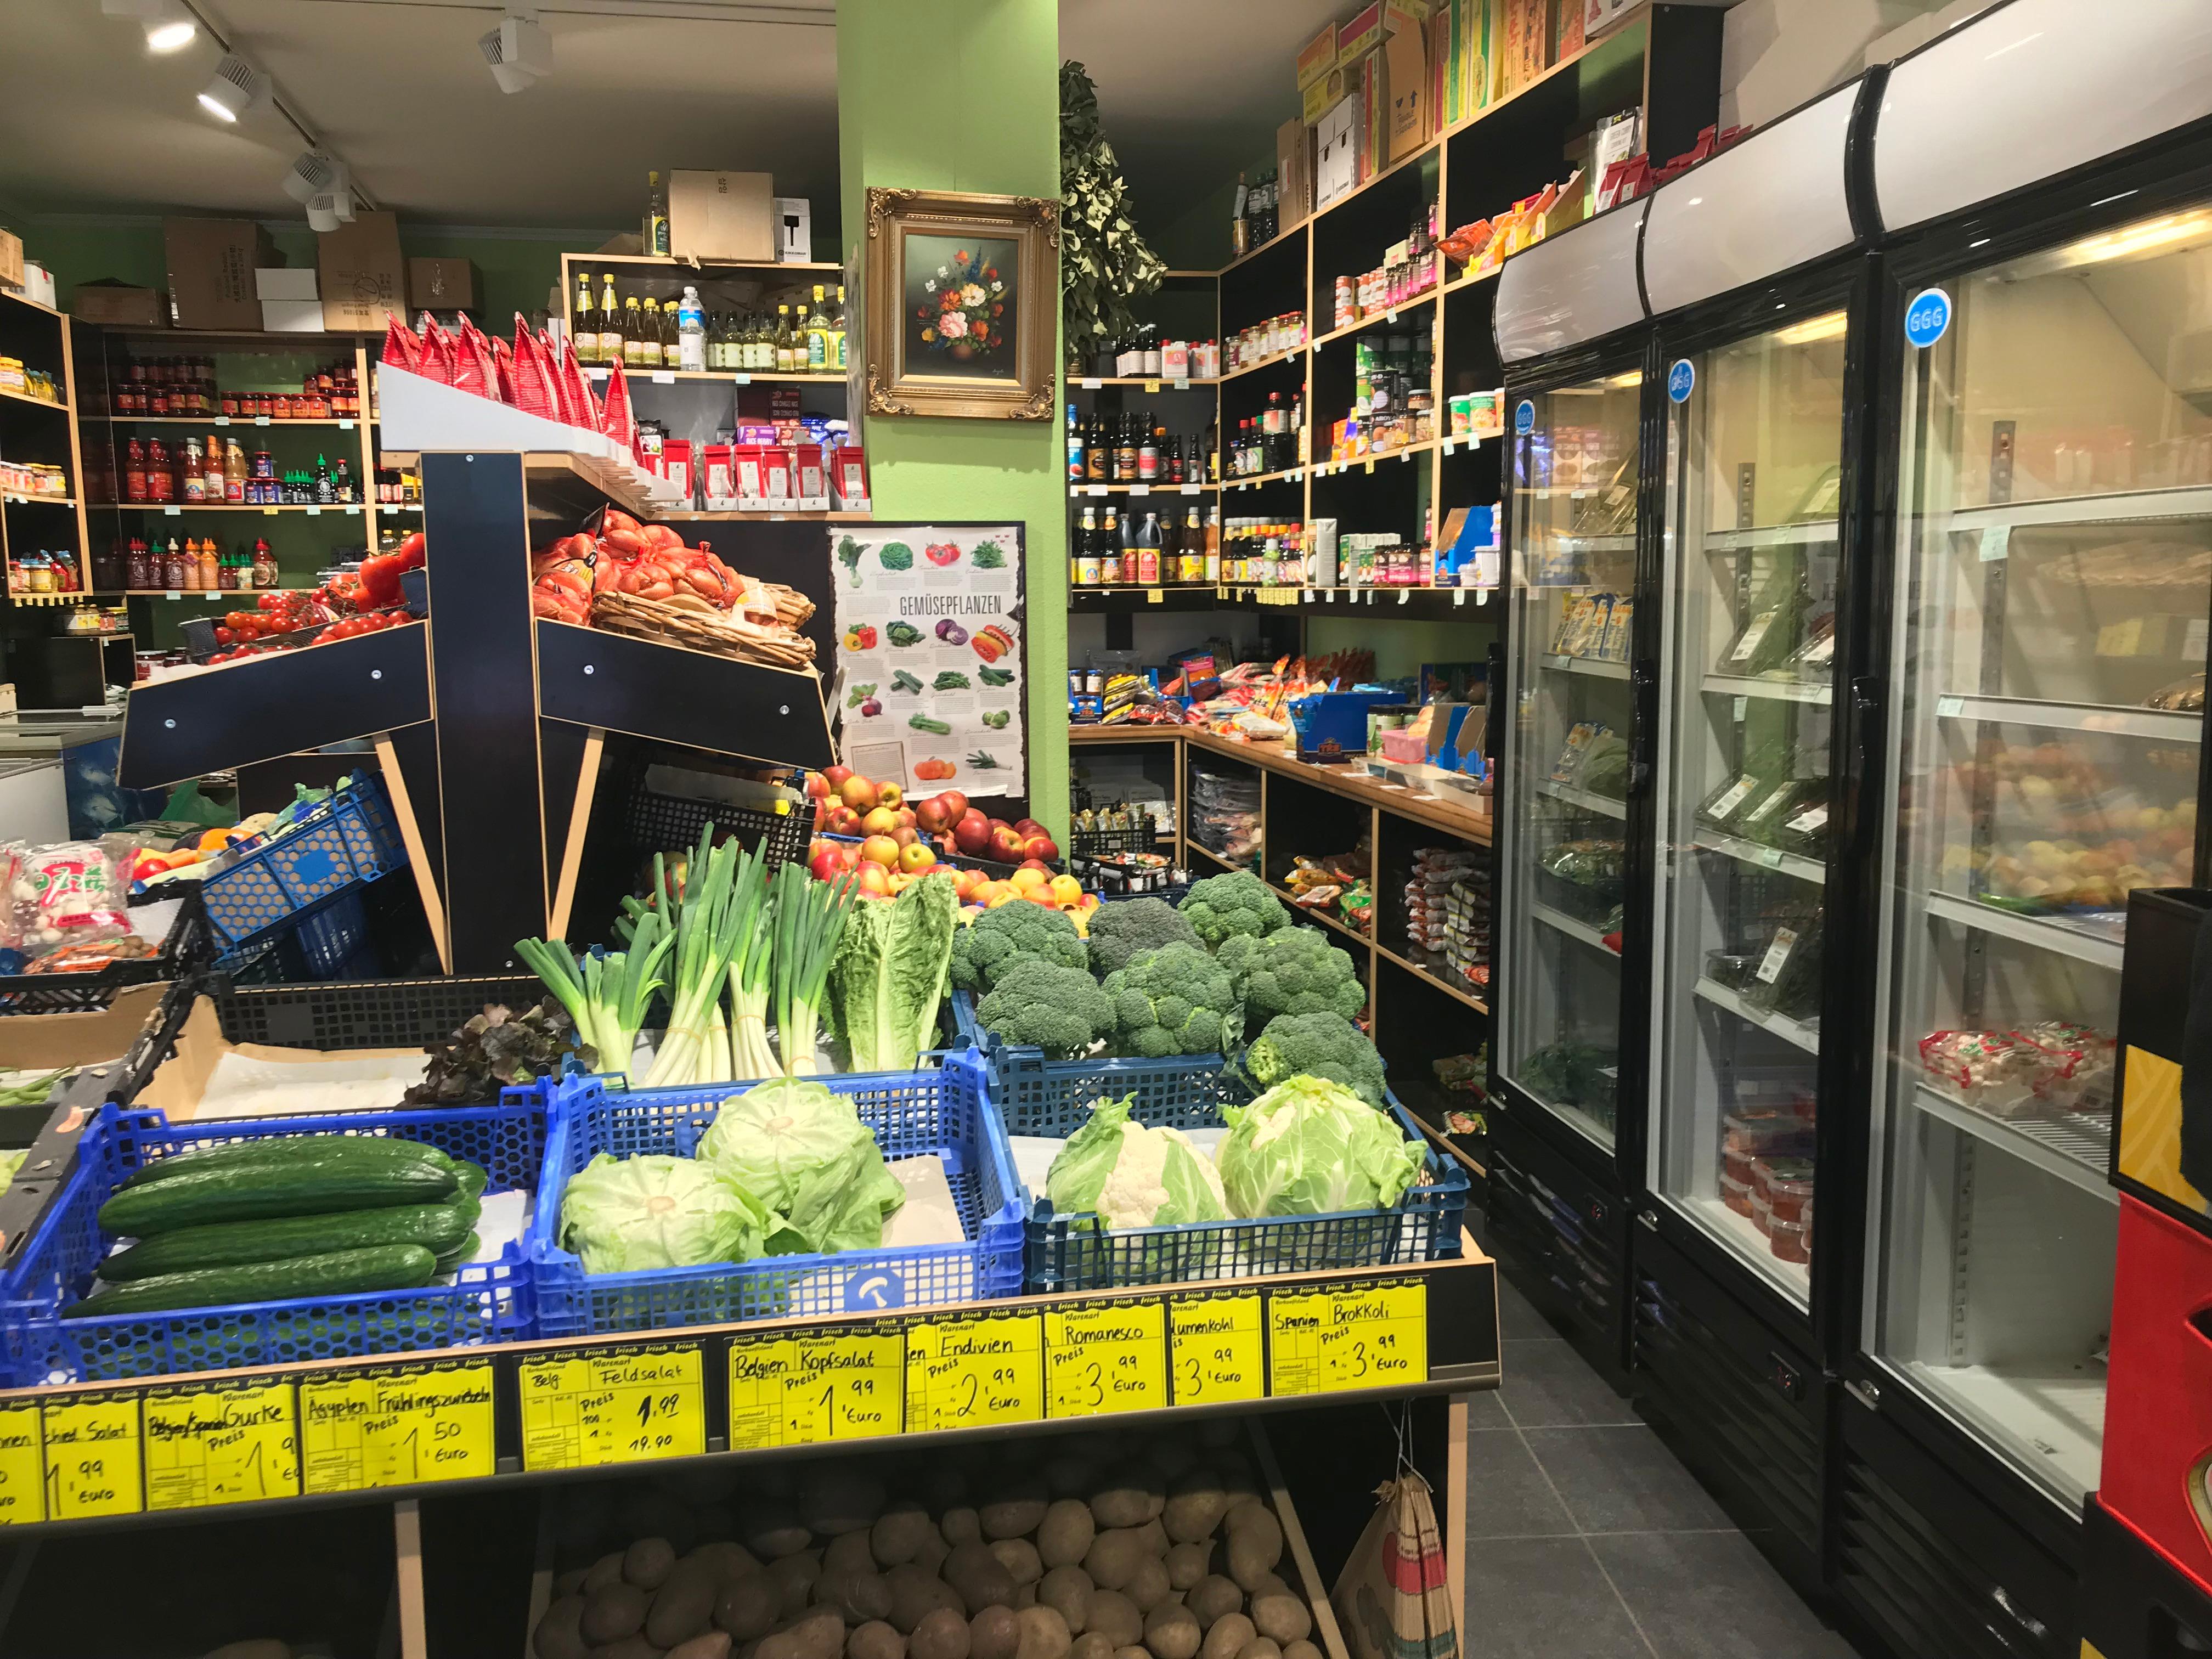 Banlao Sushi, Obst & Gemüse I Köln, Glücksburgstr. 25-27 in Köln